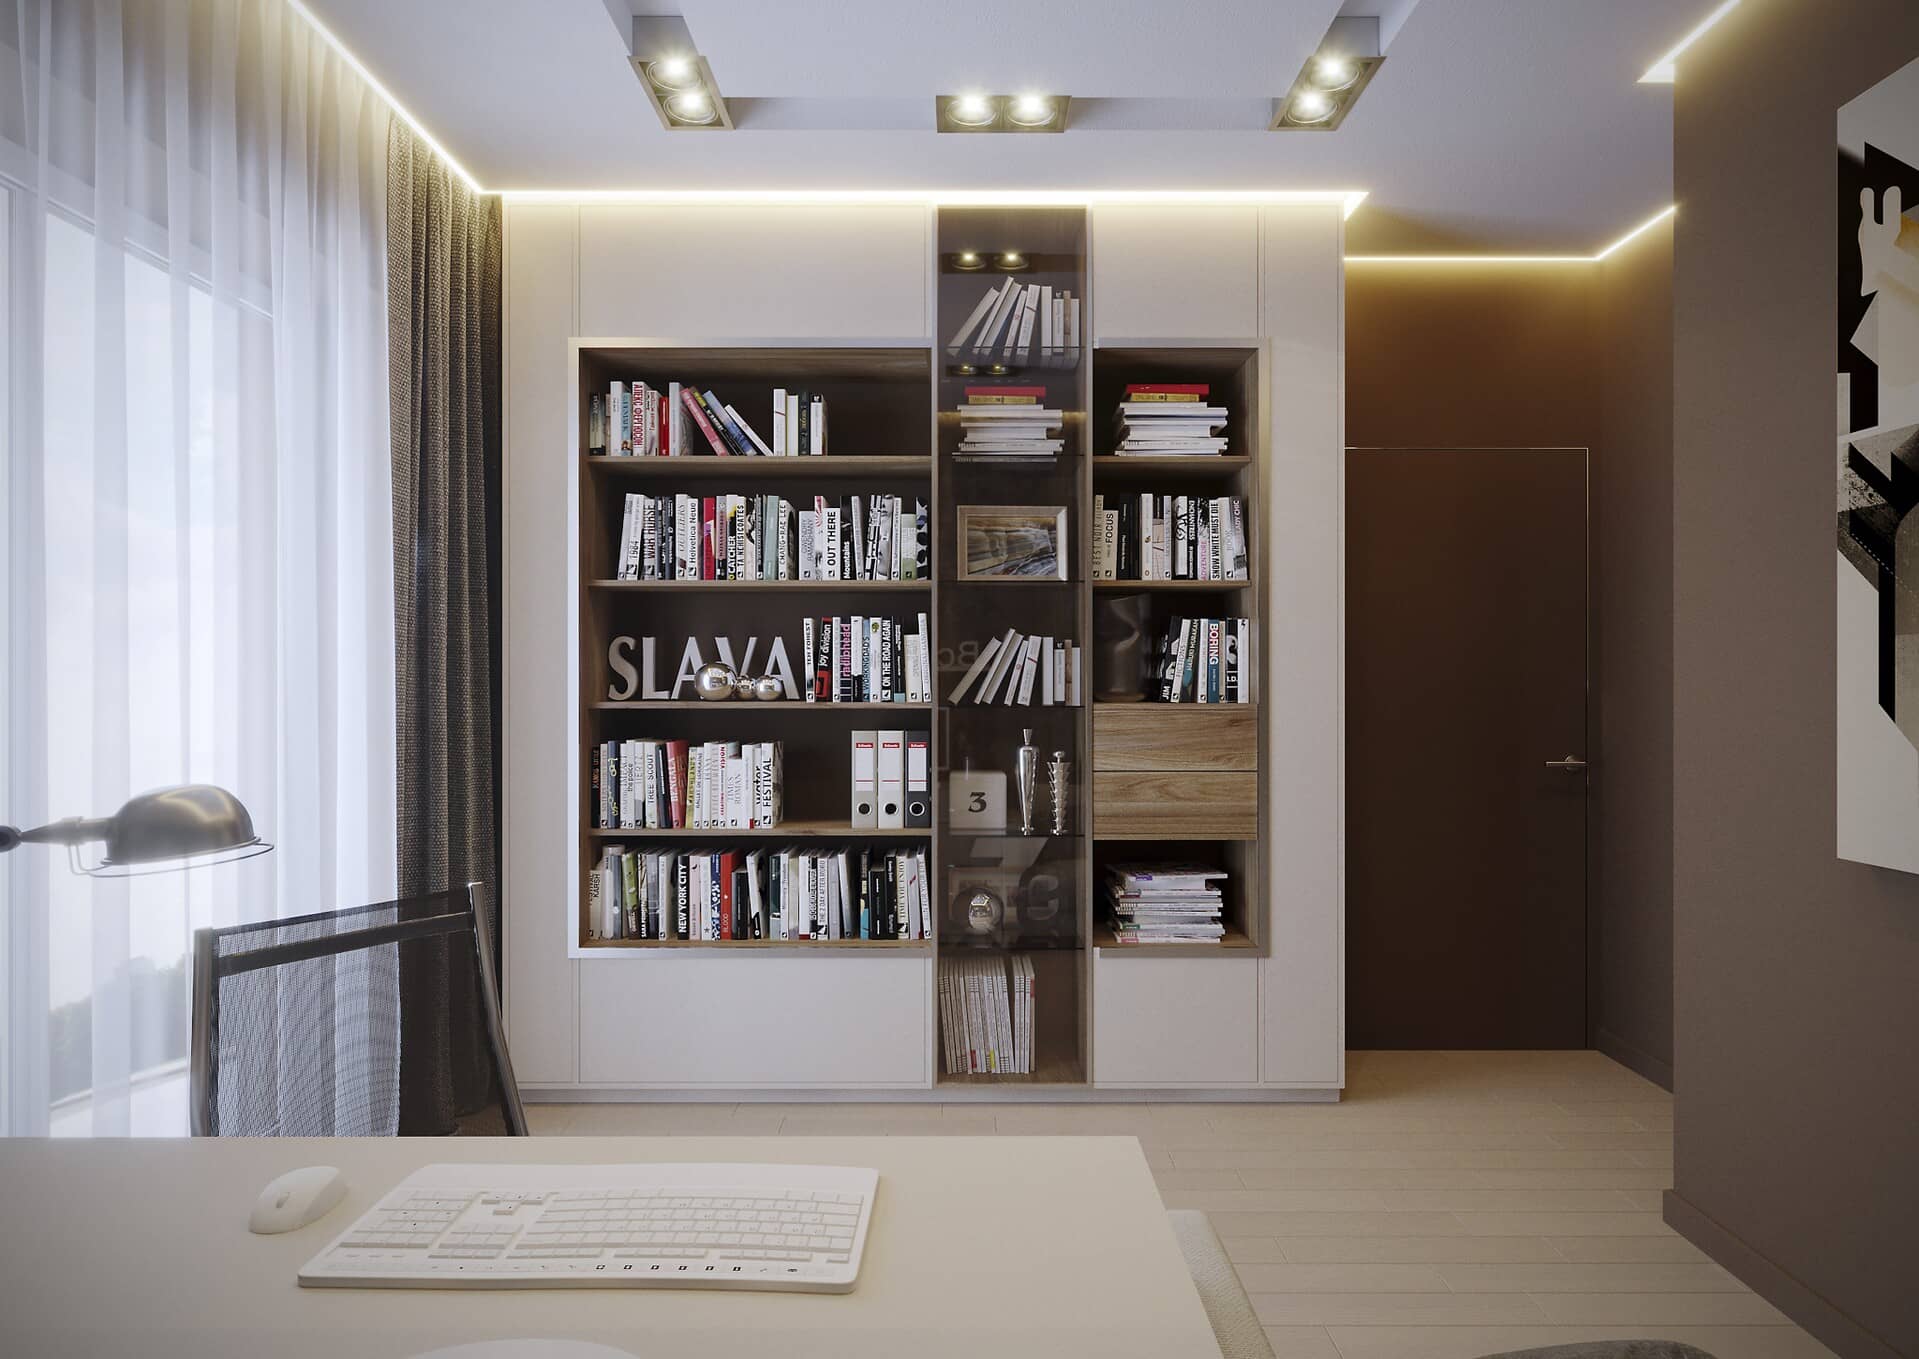 Встроенные полочки для книг в стену в кабинете экономят пространство